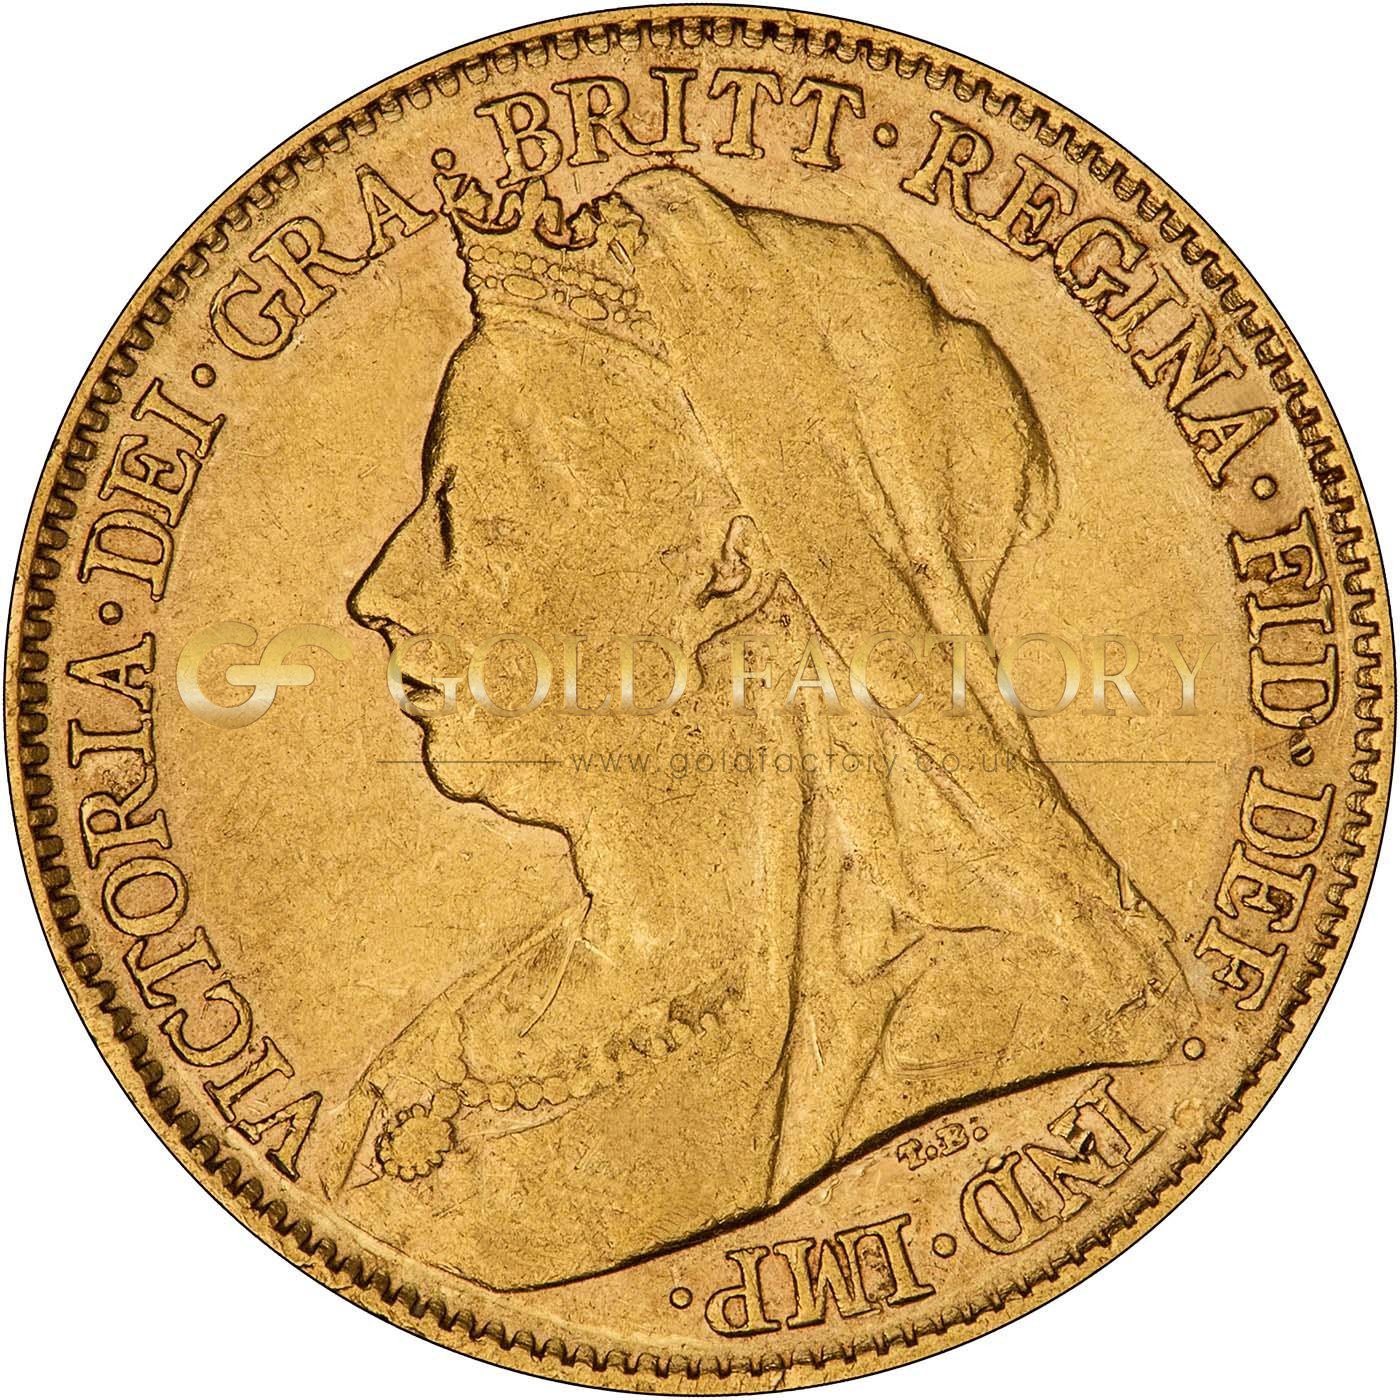 British Half Sovereign Coin